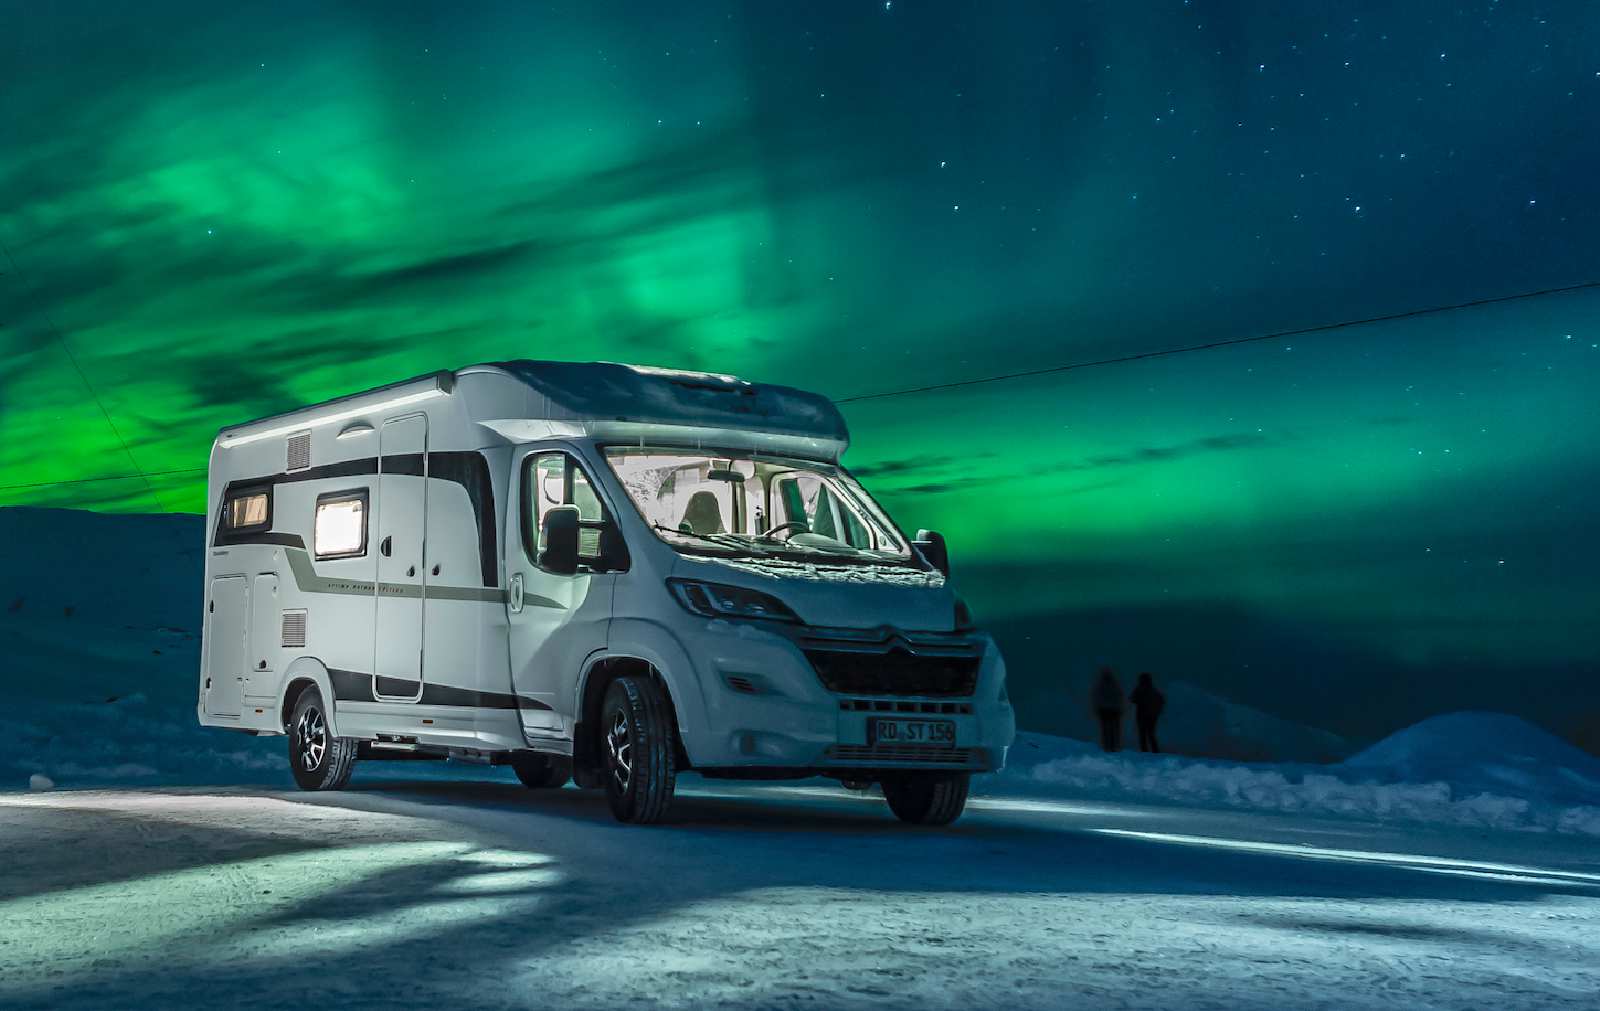 Les camping-cars Hobby à l'épreuve du froid polaire